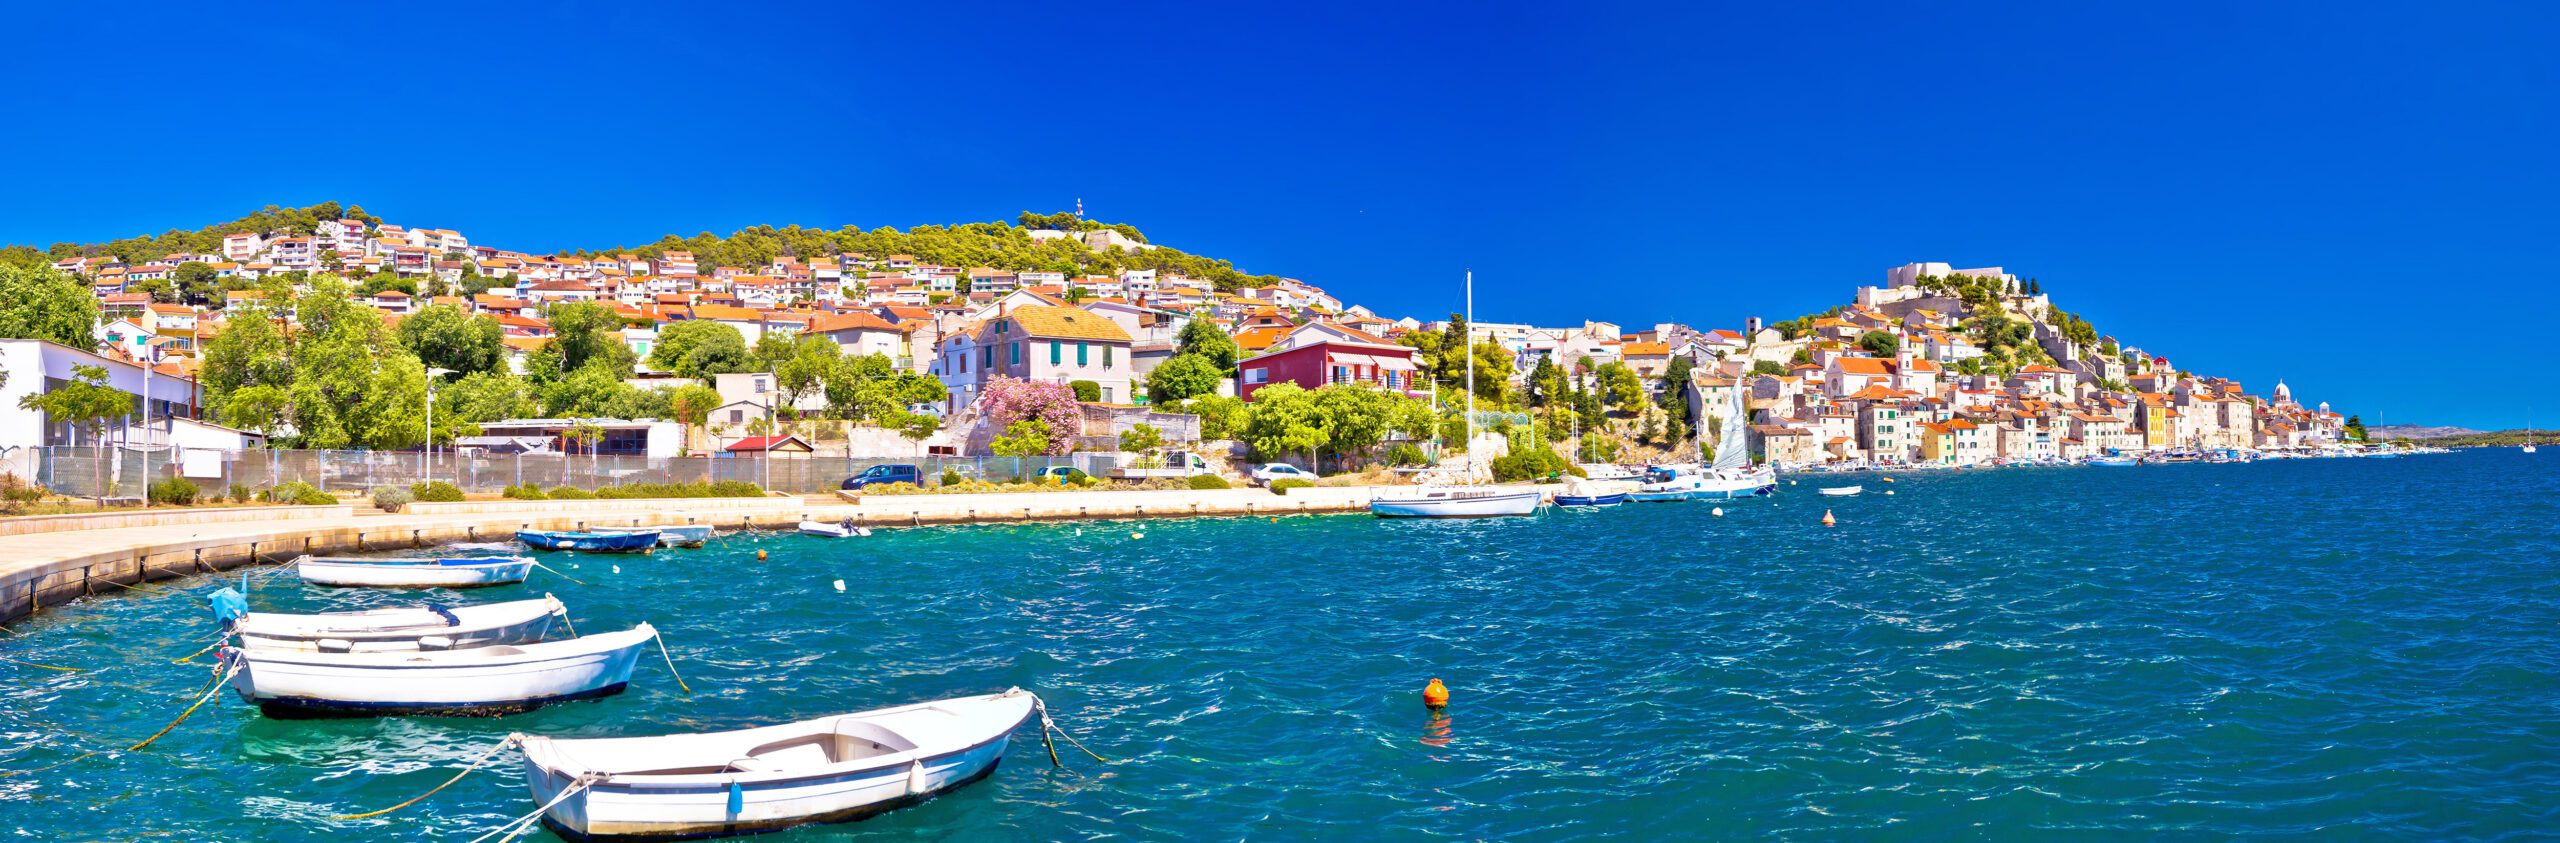 Colorful city of Sibenik panoramic view, Dalmatia, Croatia